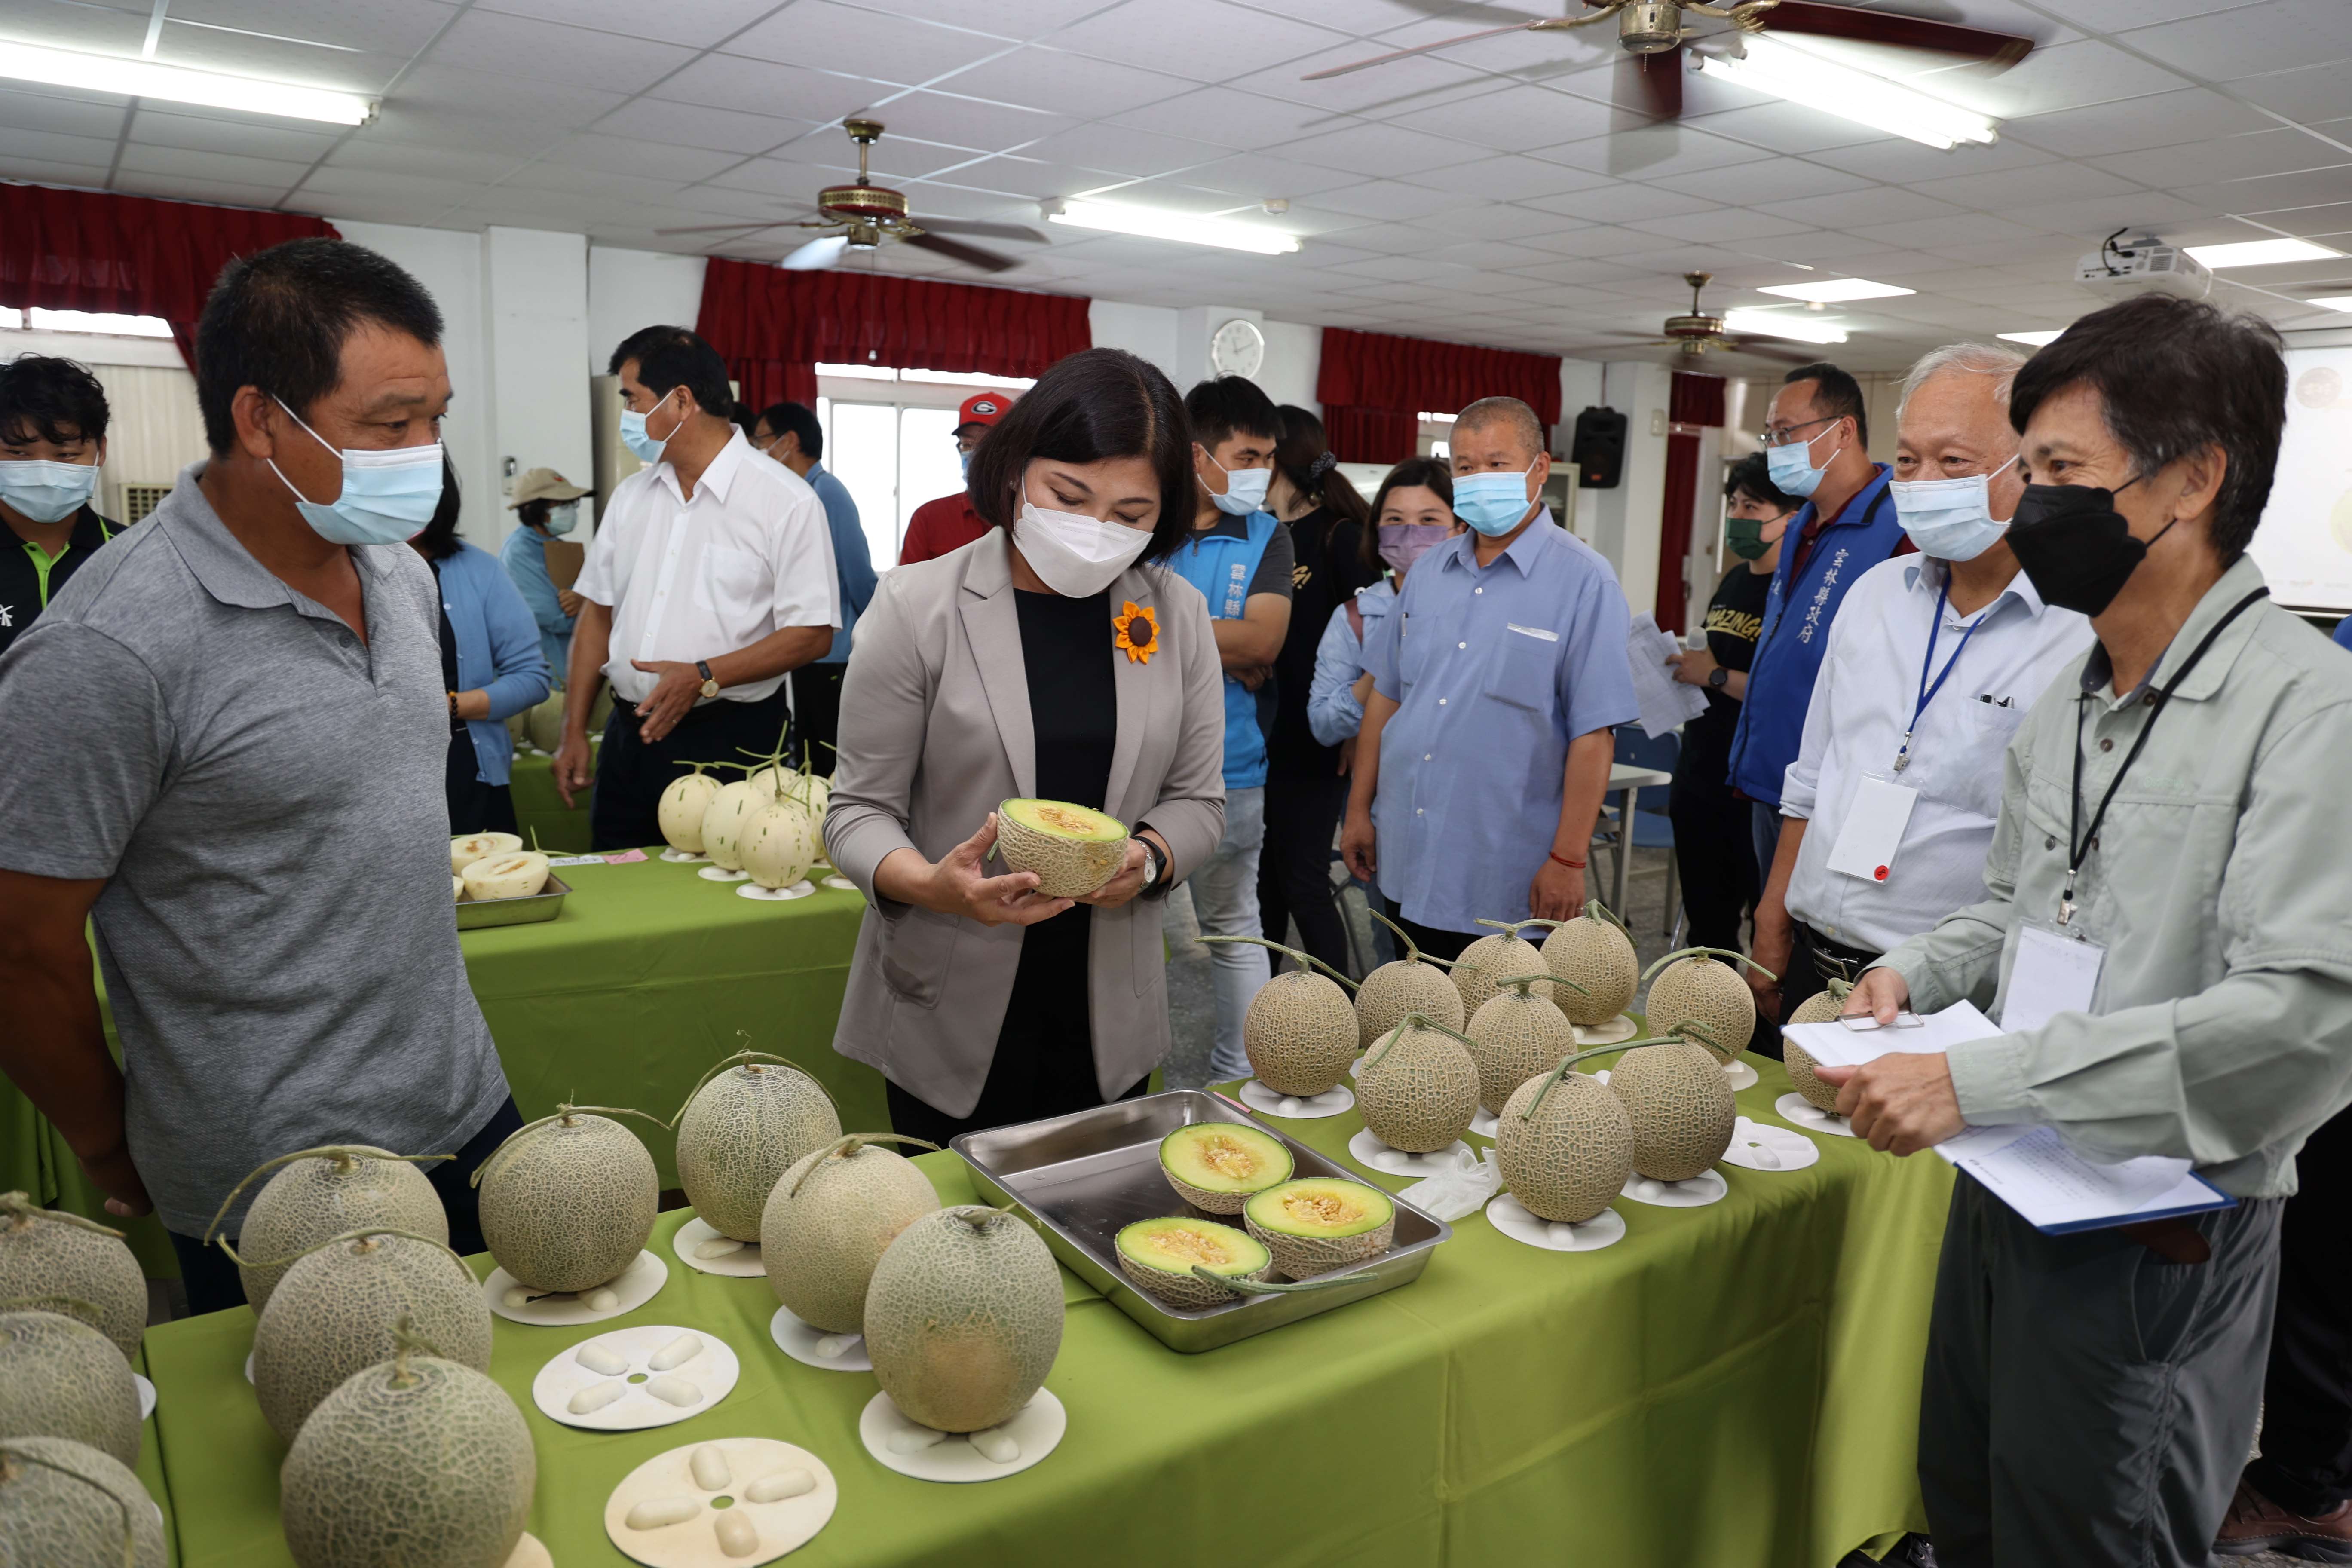 雲林縣政府今(11)日在崙背鄉農會舉辦首屆「洋香瓜品評交流會」